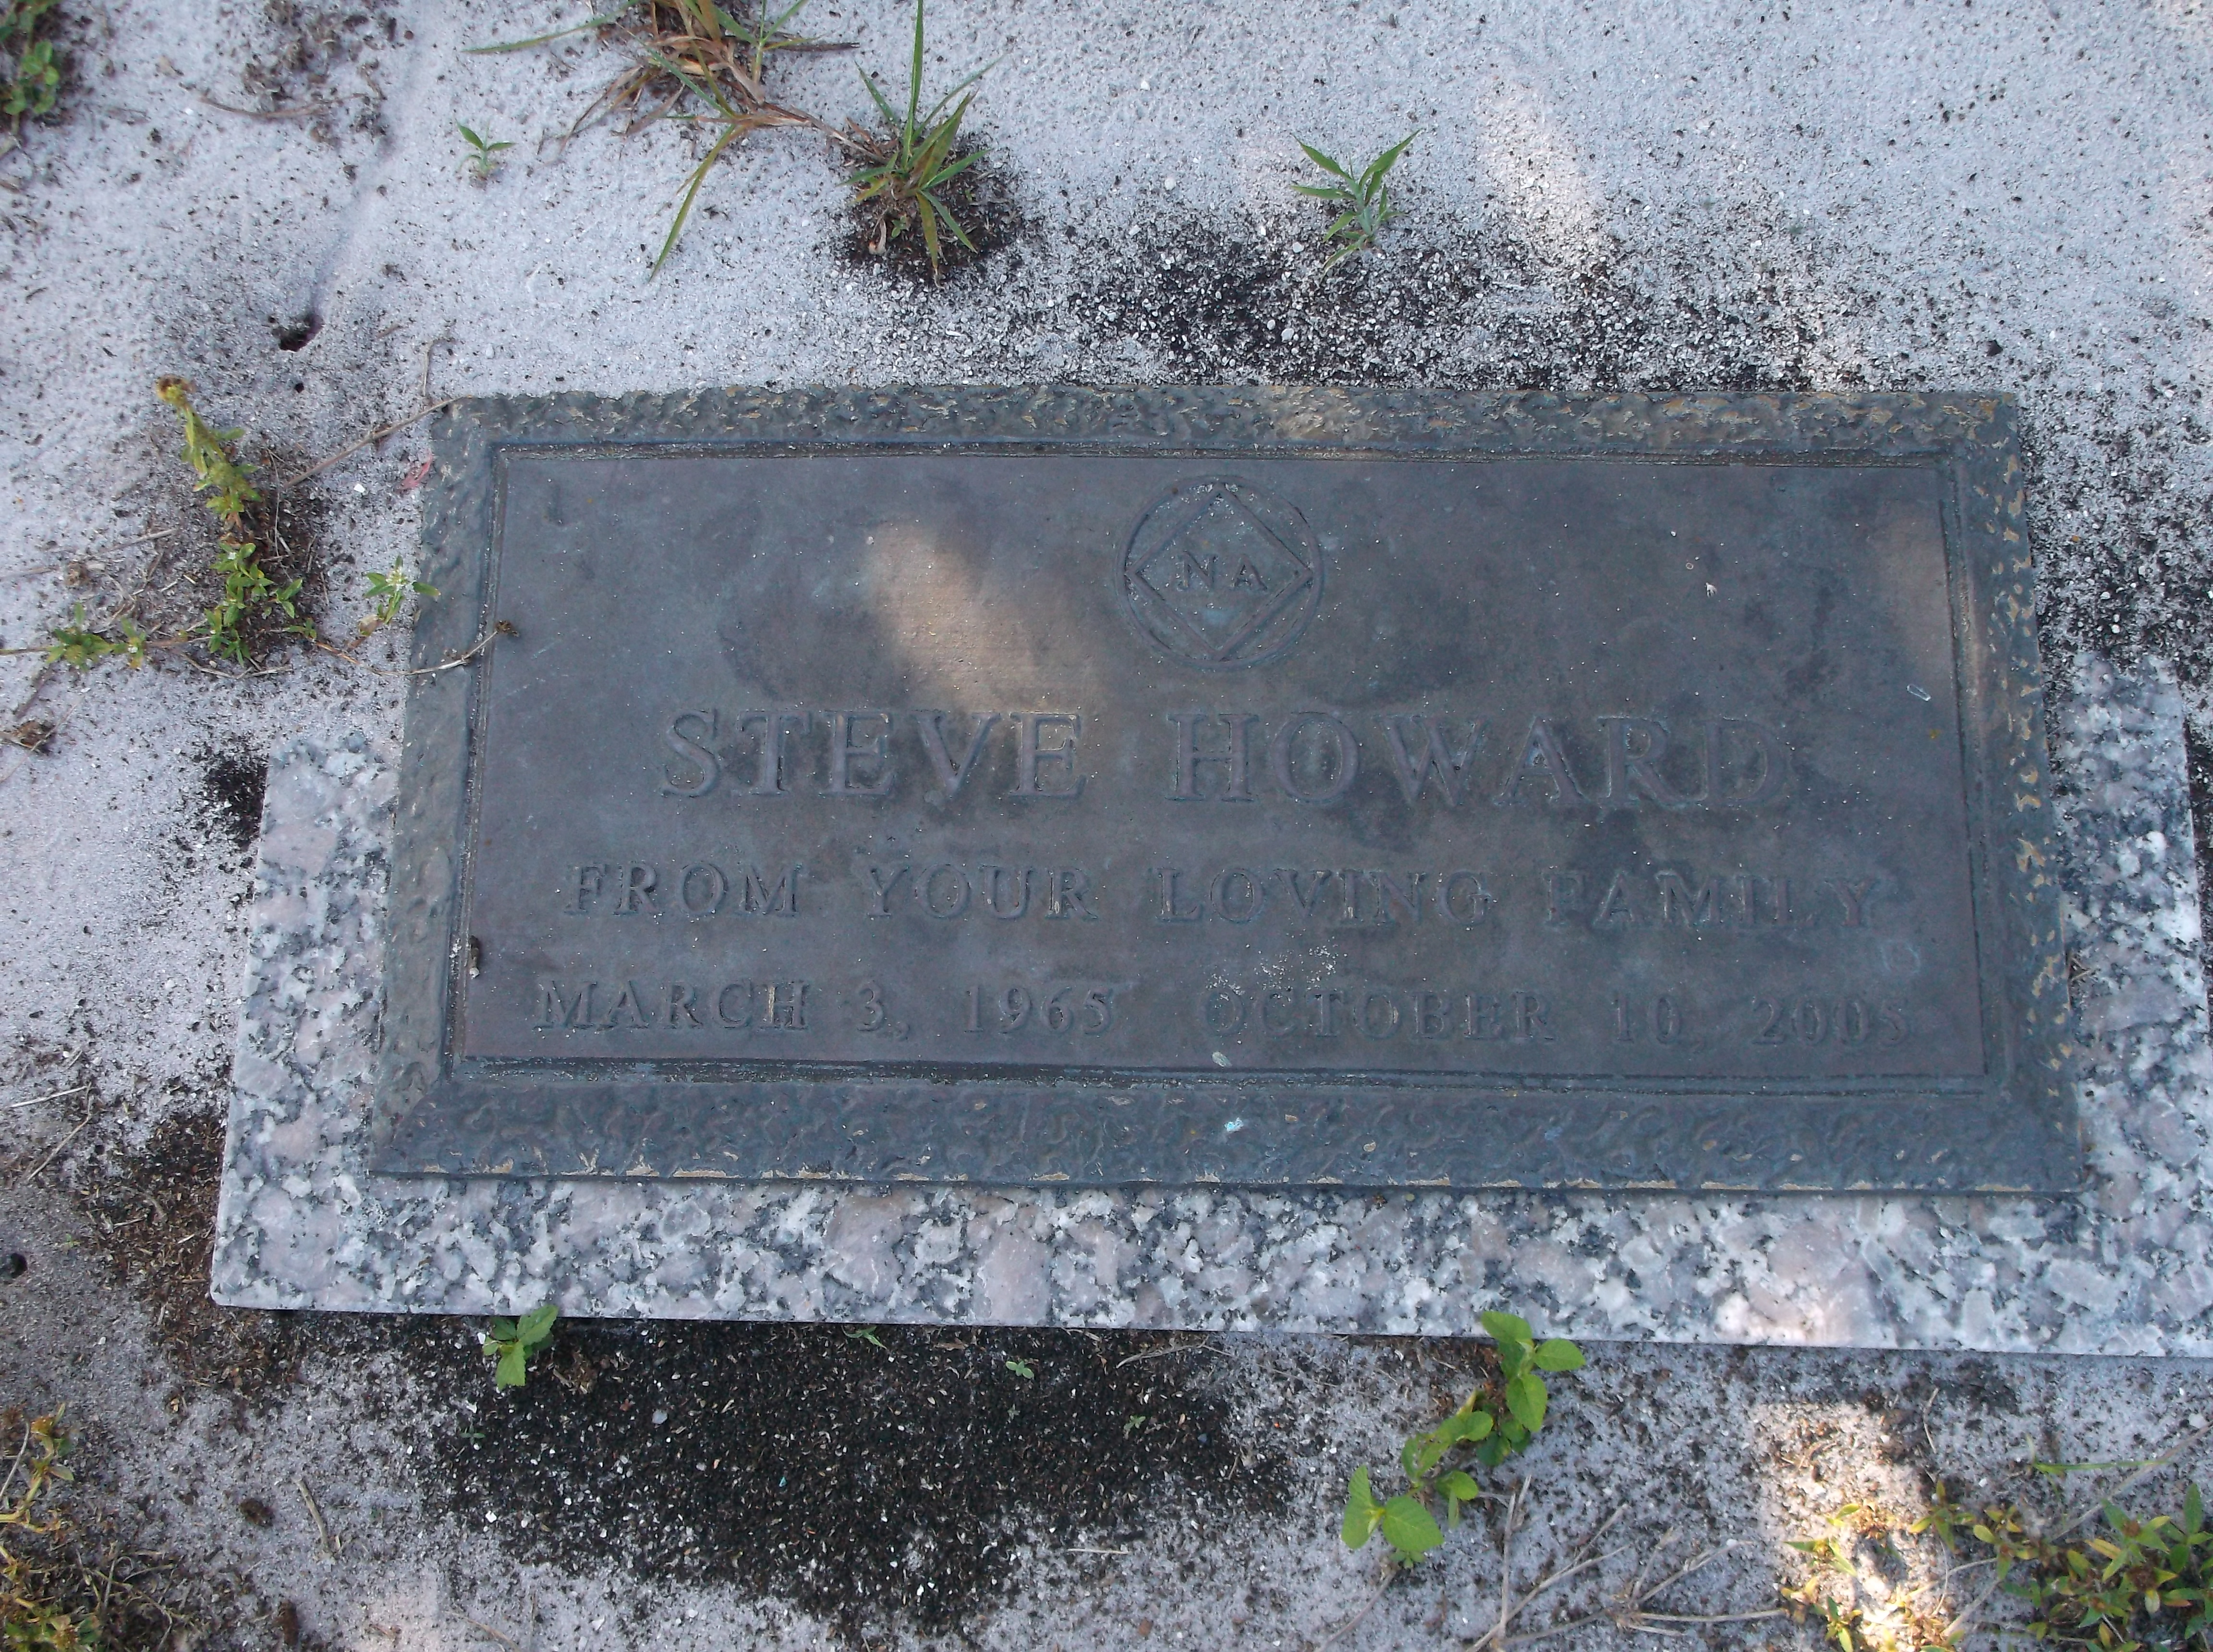 Steve Howard